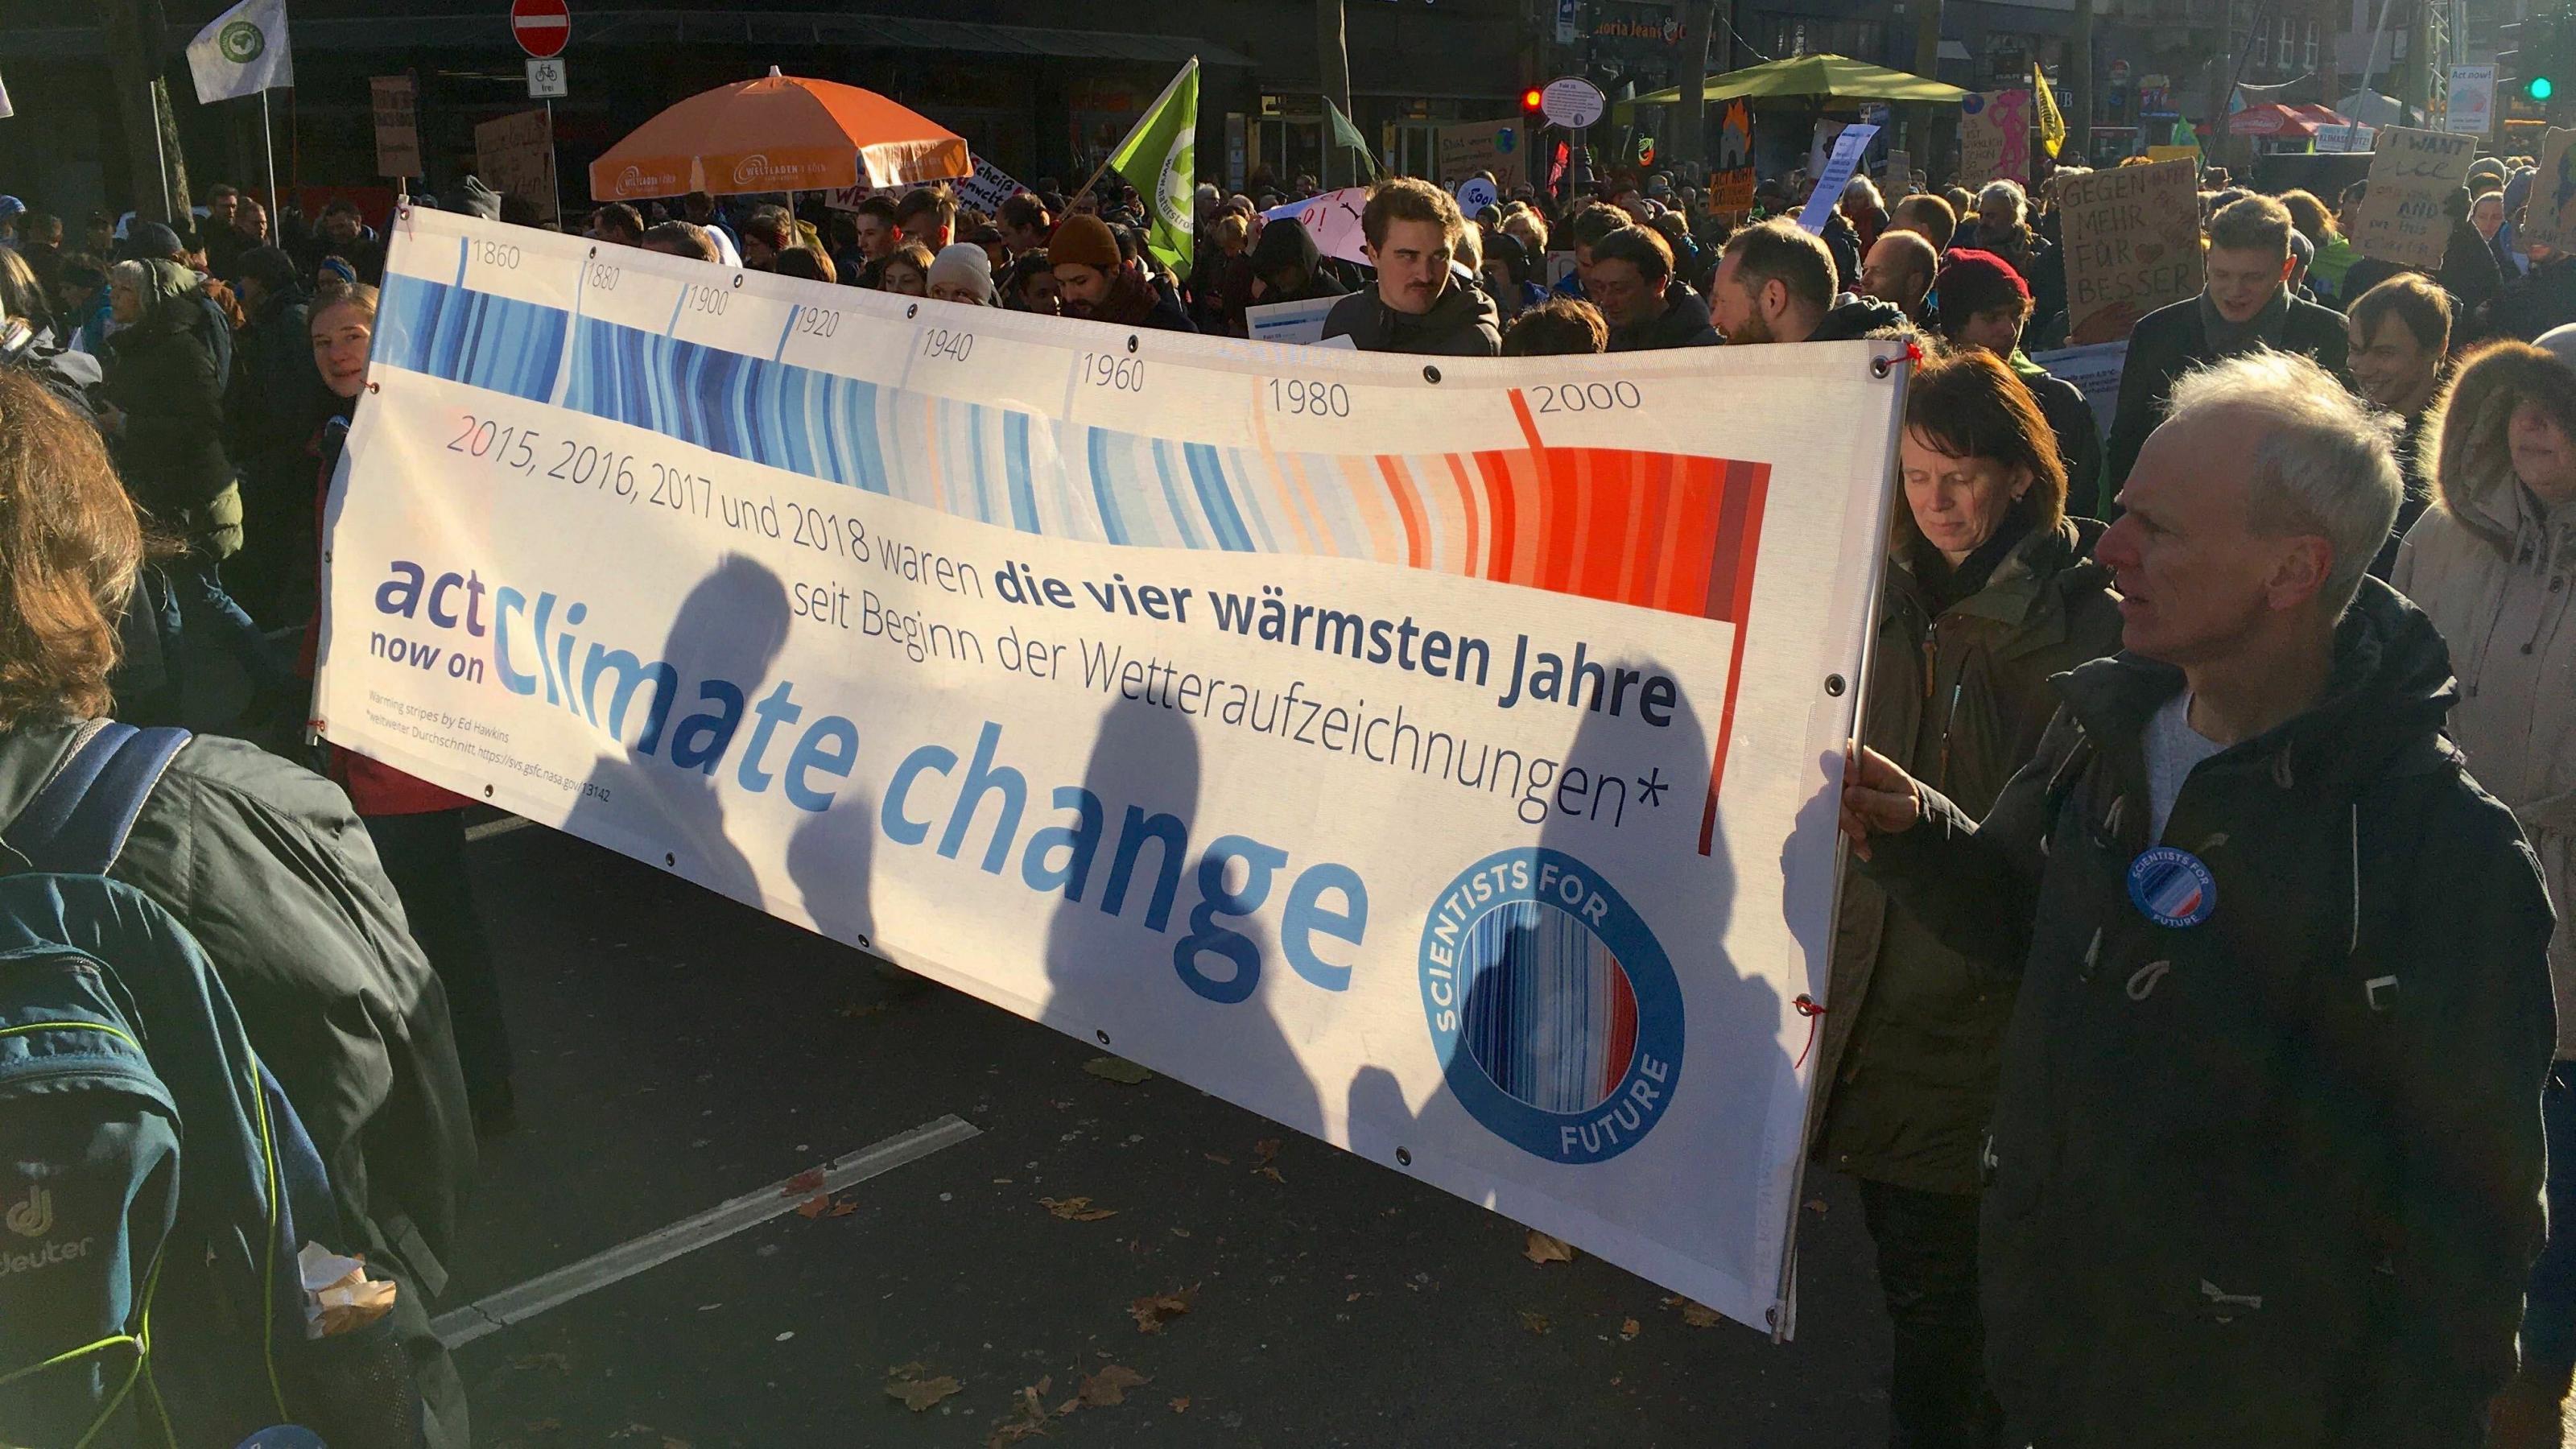 Szene vom Klimastreik 2019 in Köln. Aktivst:innen von Scientists for Future tragen ein Banner mit den Warming Stripes und dem Hinweis, dass die Jahre 2015 bis 2018 jeweils Temperaturrekorde erreicht haben.